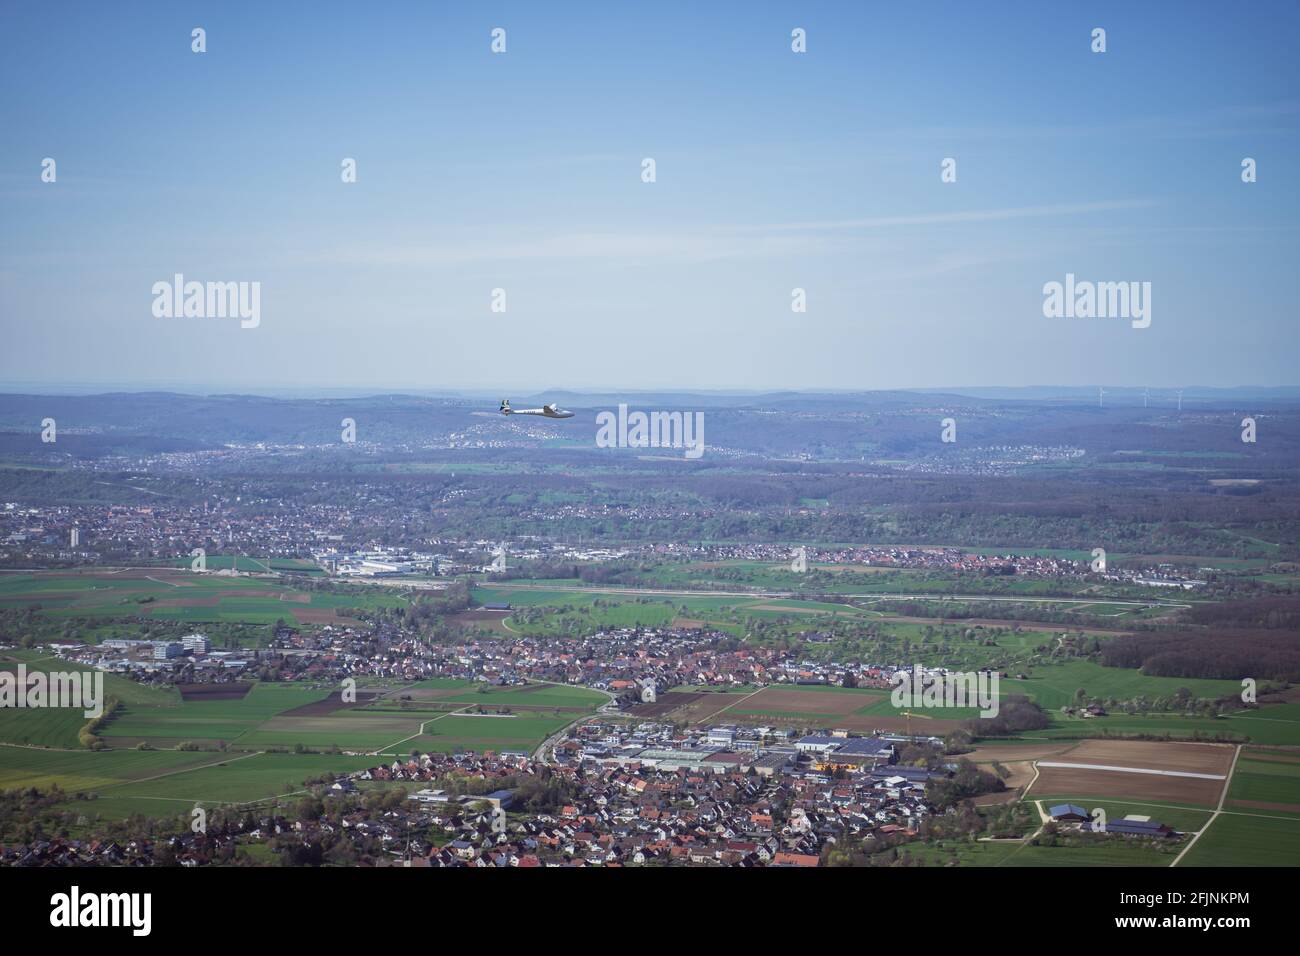 L'aliante vola su una valle in Germania, vicino a Stoccarda. Vista da una scogliera mostra i villaggi rurali, molti campi e alberi in un'area popolata. Foto Stock